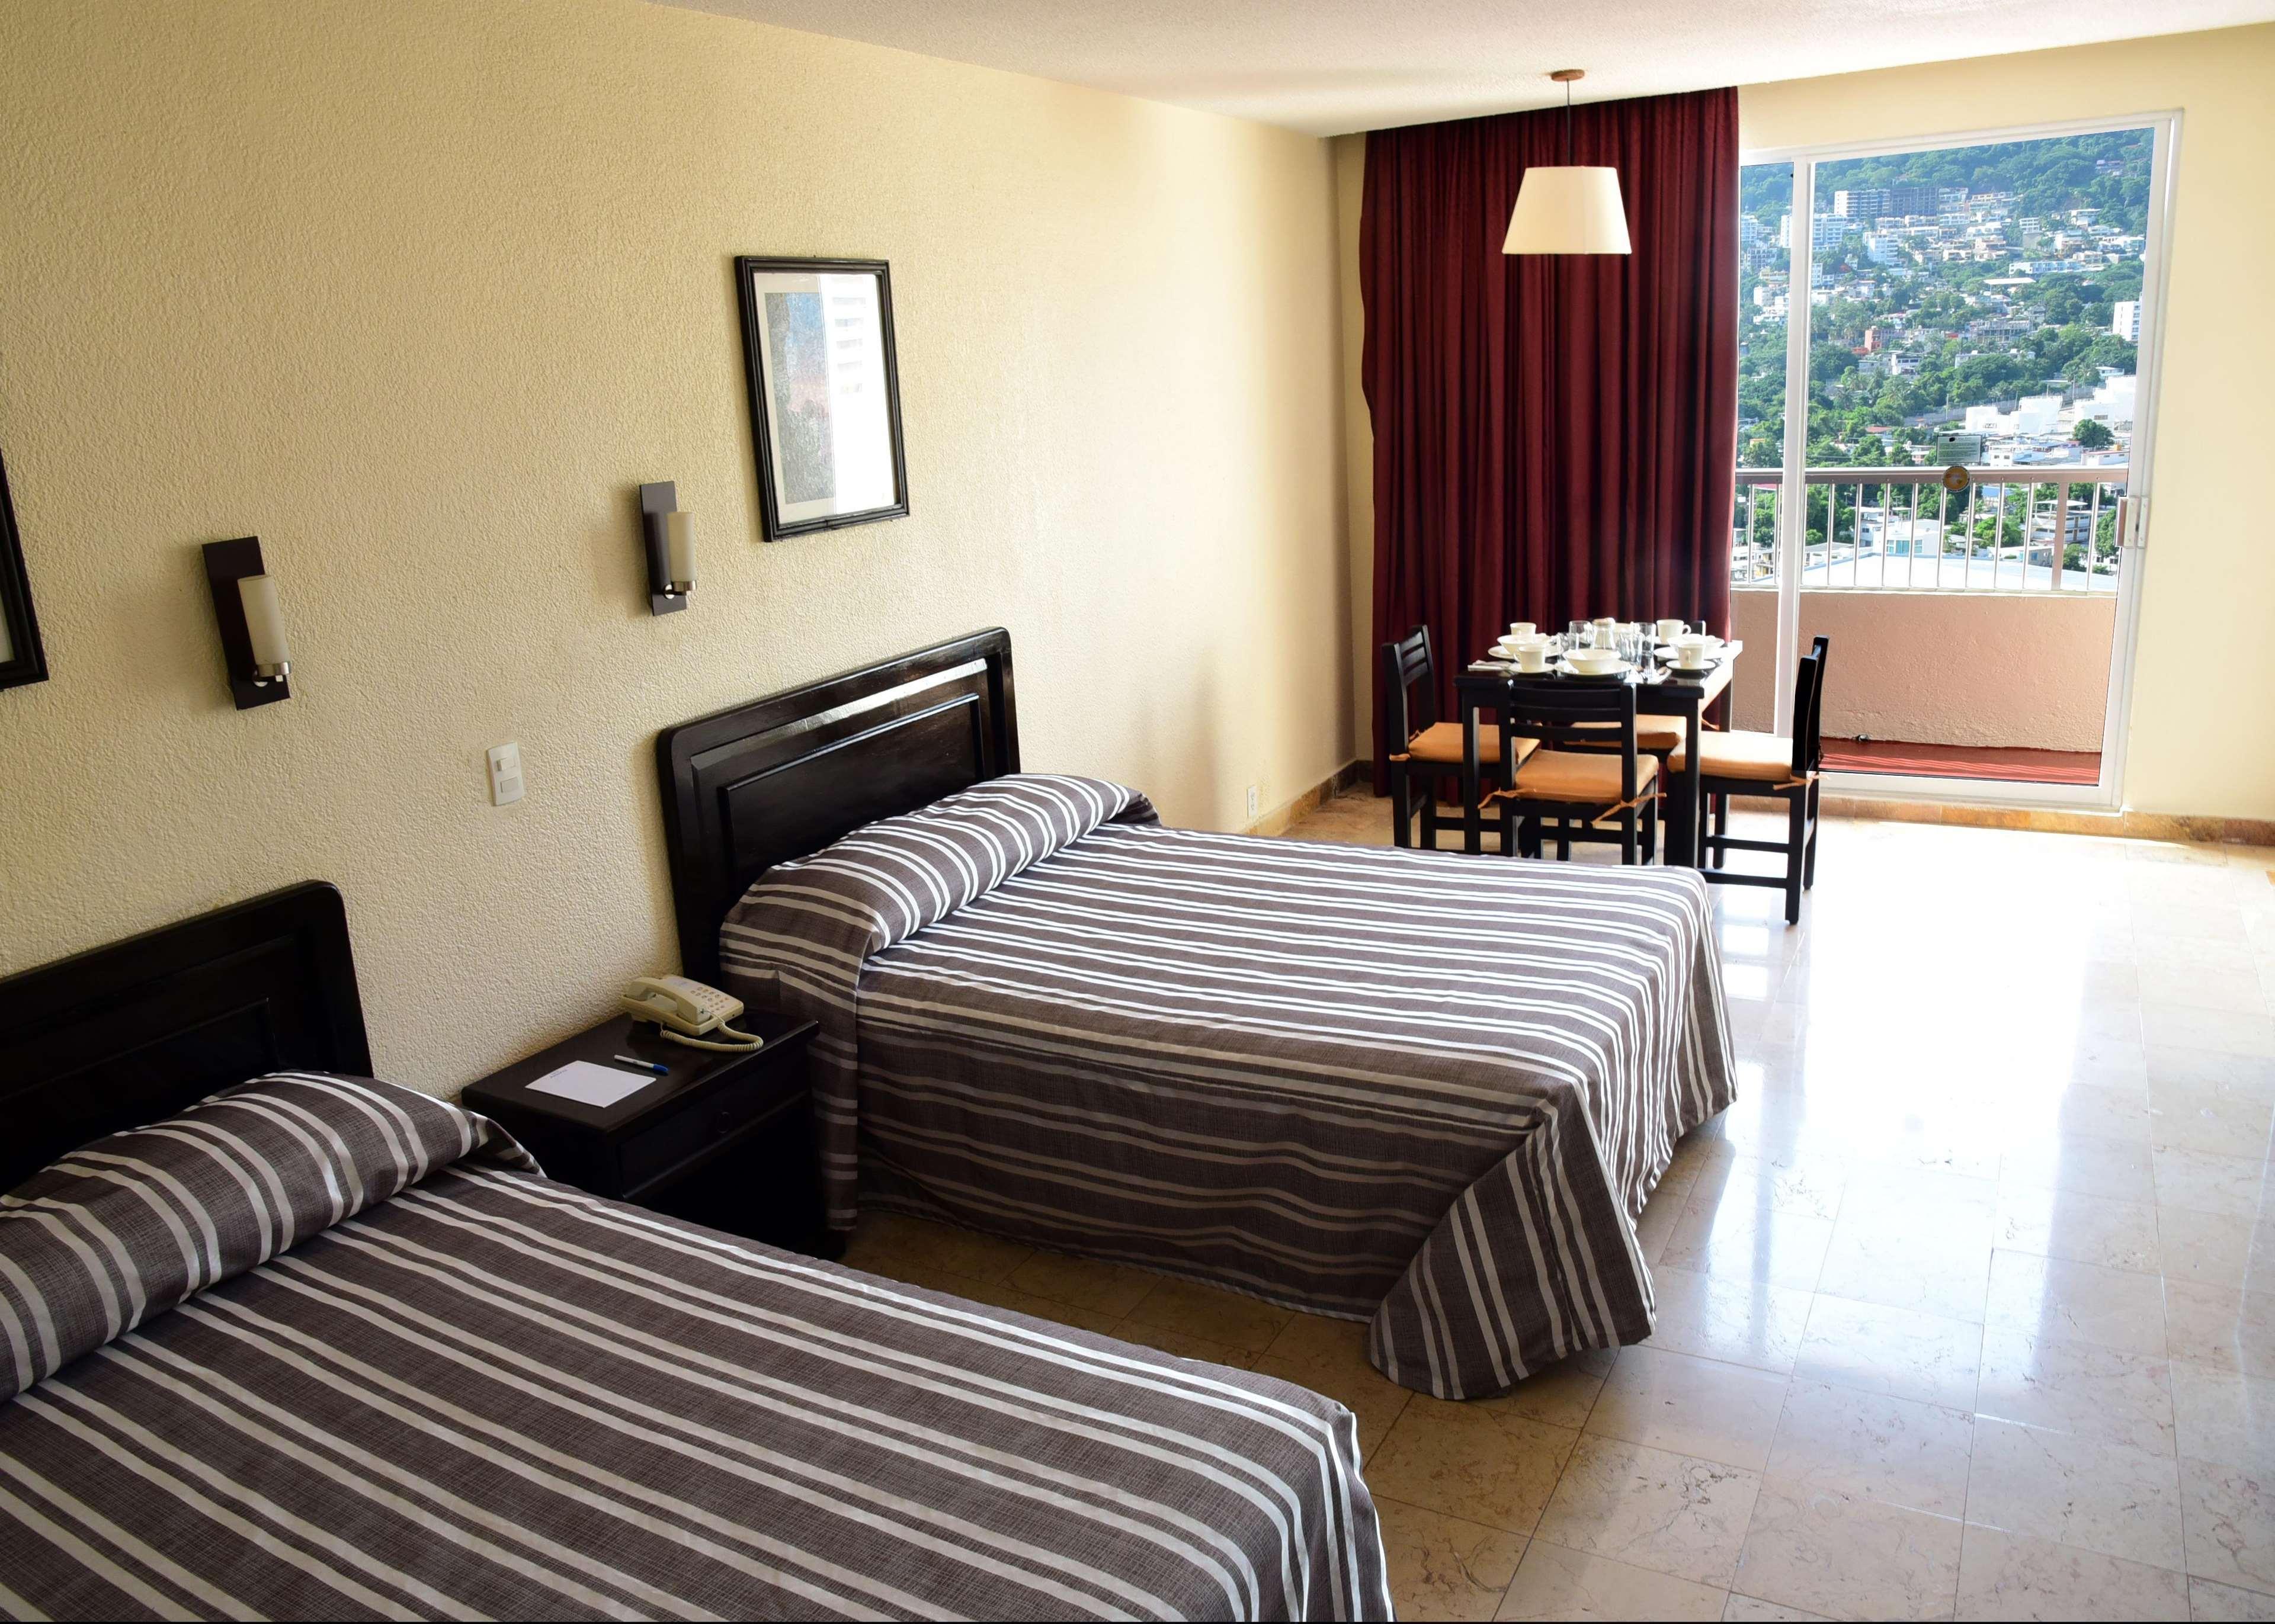 Amarea Hotel Acapulco Exterior foto